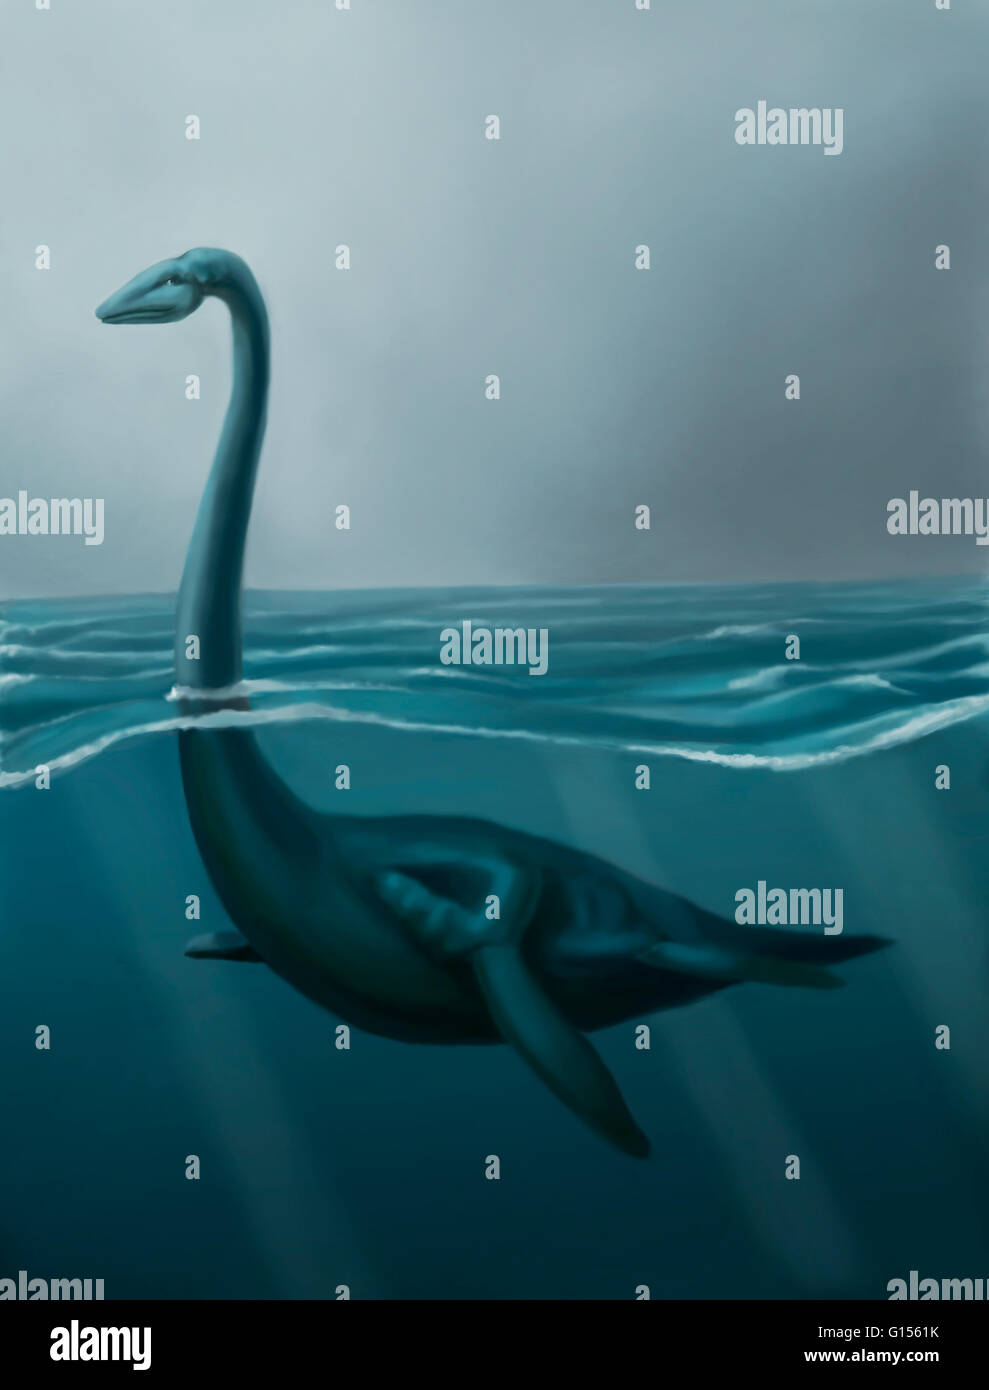 Illustration du Loch Ness la natation. Observations de la monster ont eu lieu au moins depuis le 15e siècle, avec des histoires antérieures datant du 6ème siècle, mais la preuve scientifique de son existence fait défaut. Les sceptiques ont suggéré que le Banque D'Images